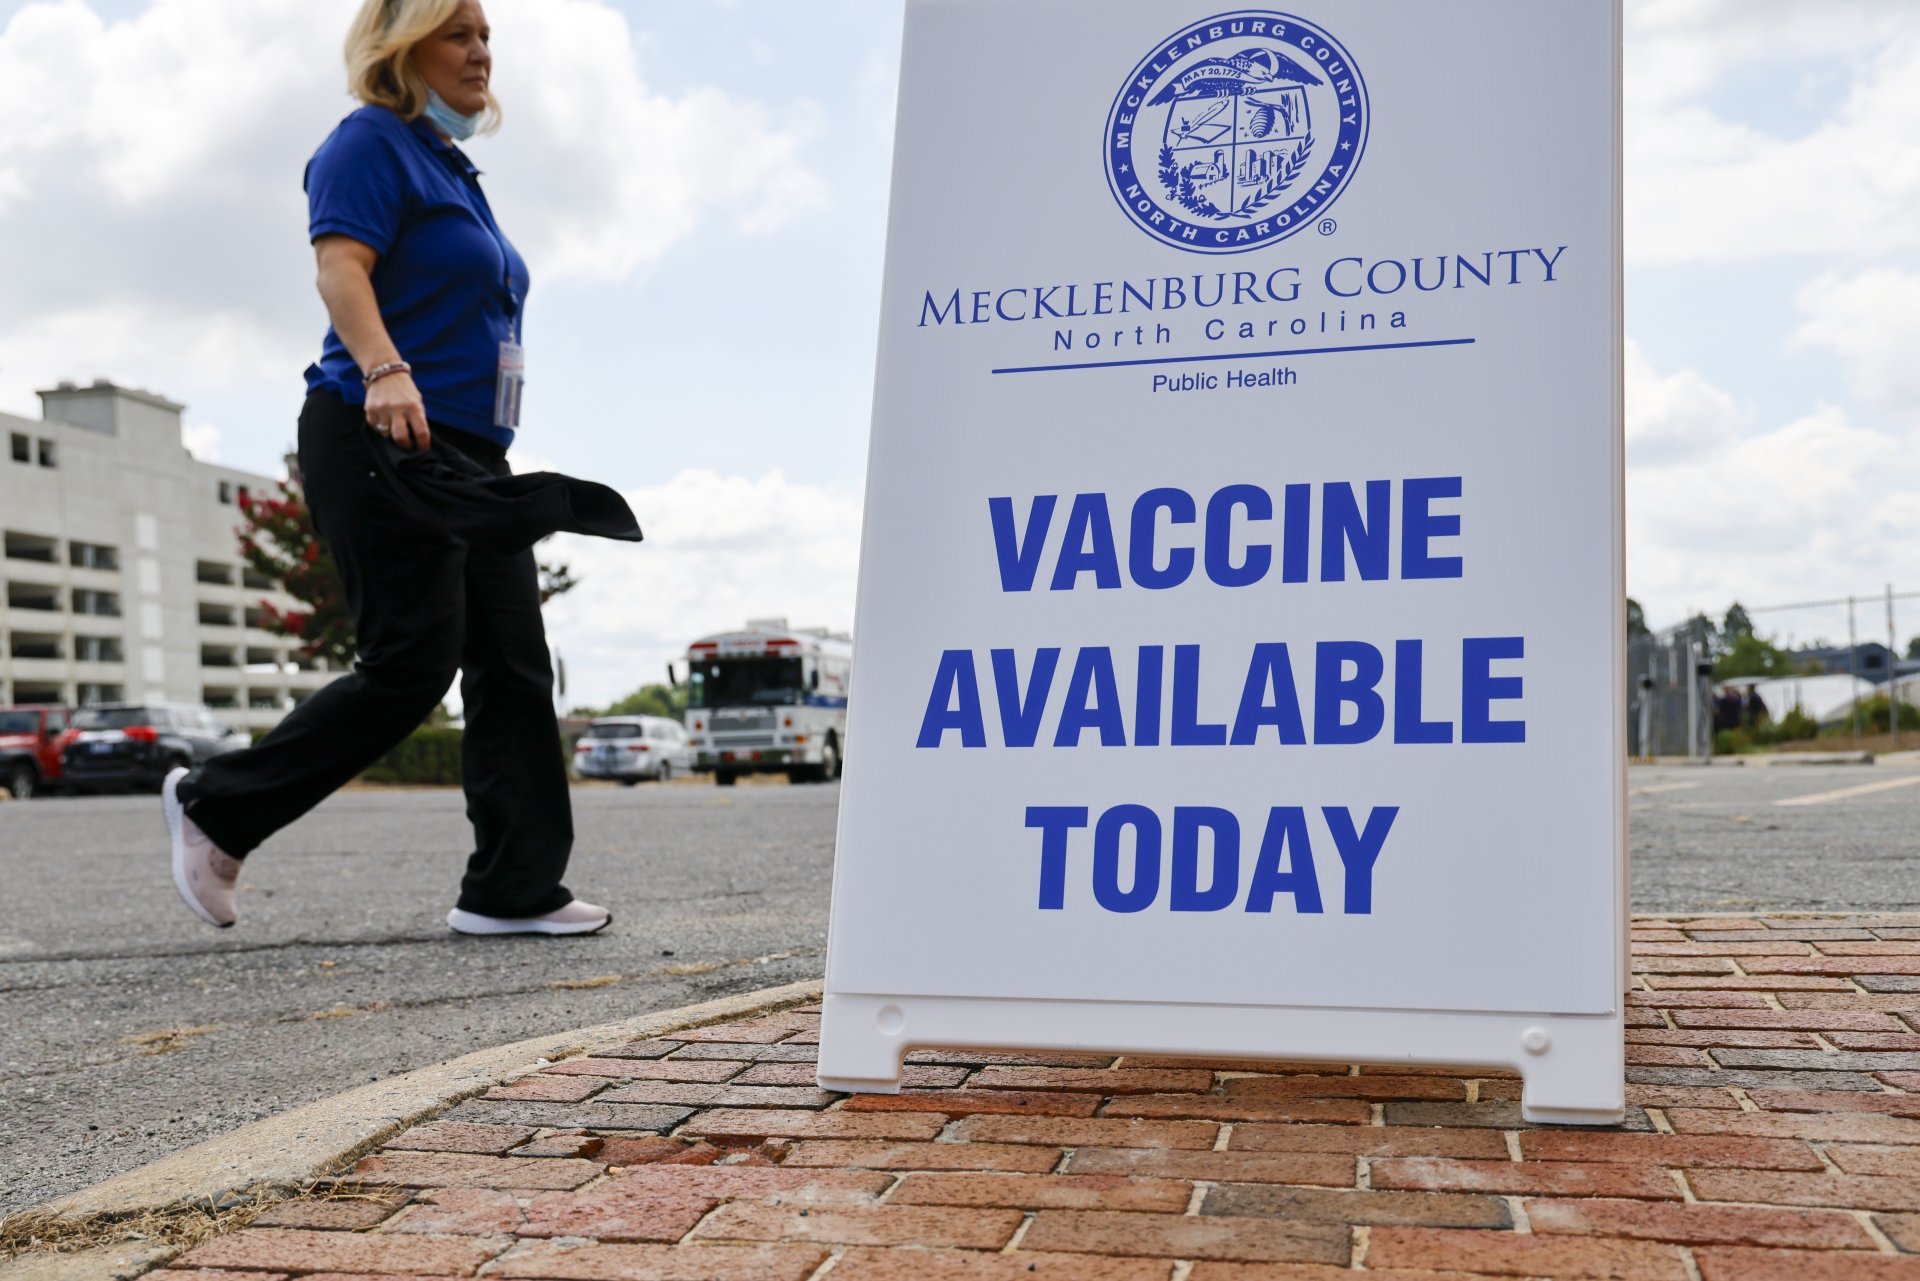 Служител на общественото здравеопазване на окръг Мекленбург пристига в клиника за ваксинация срещу маймунска шарка в Шарлът, Северна Каролина, събота, 20 август 2022 г.